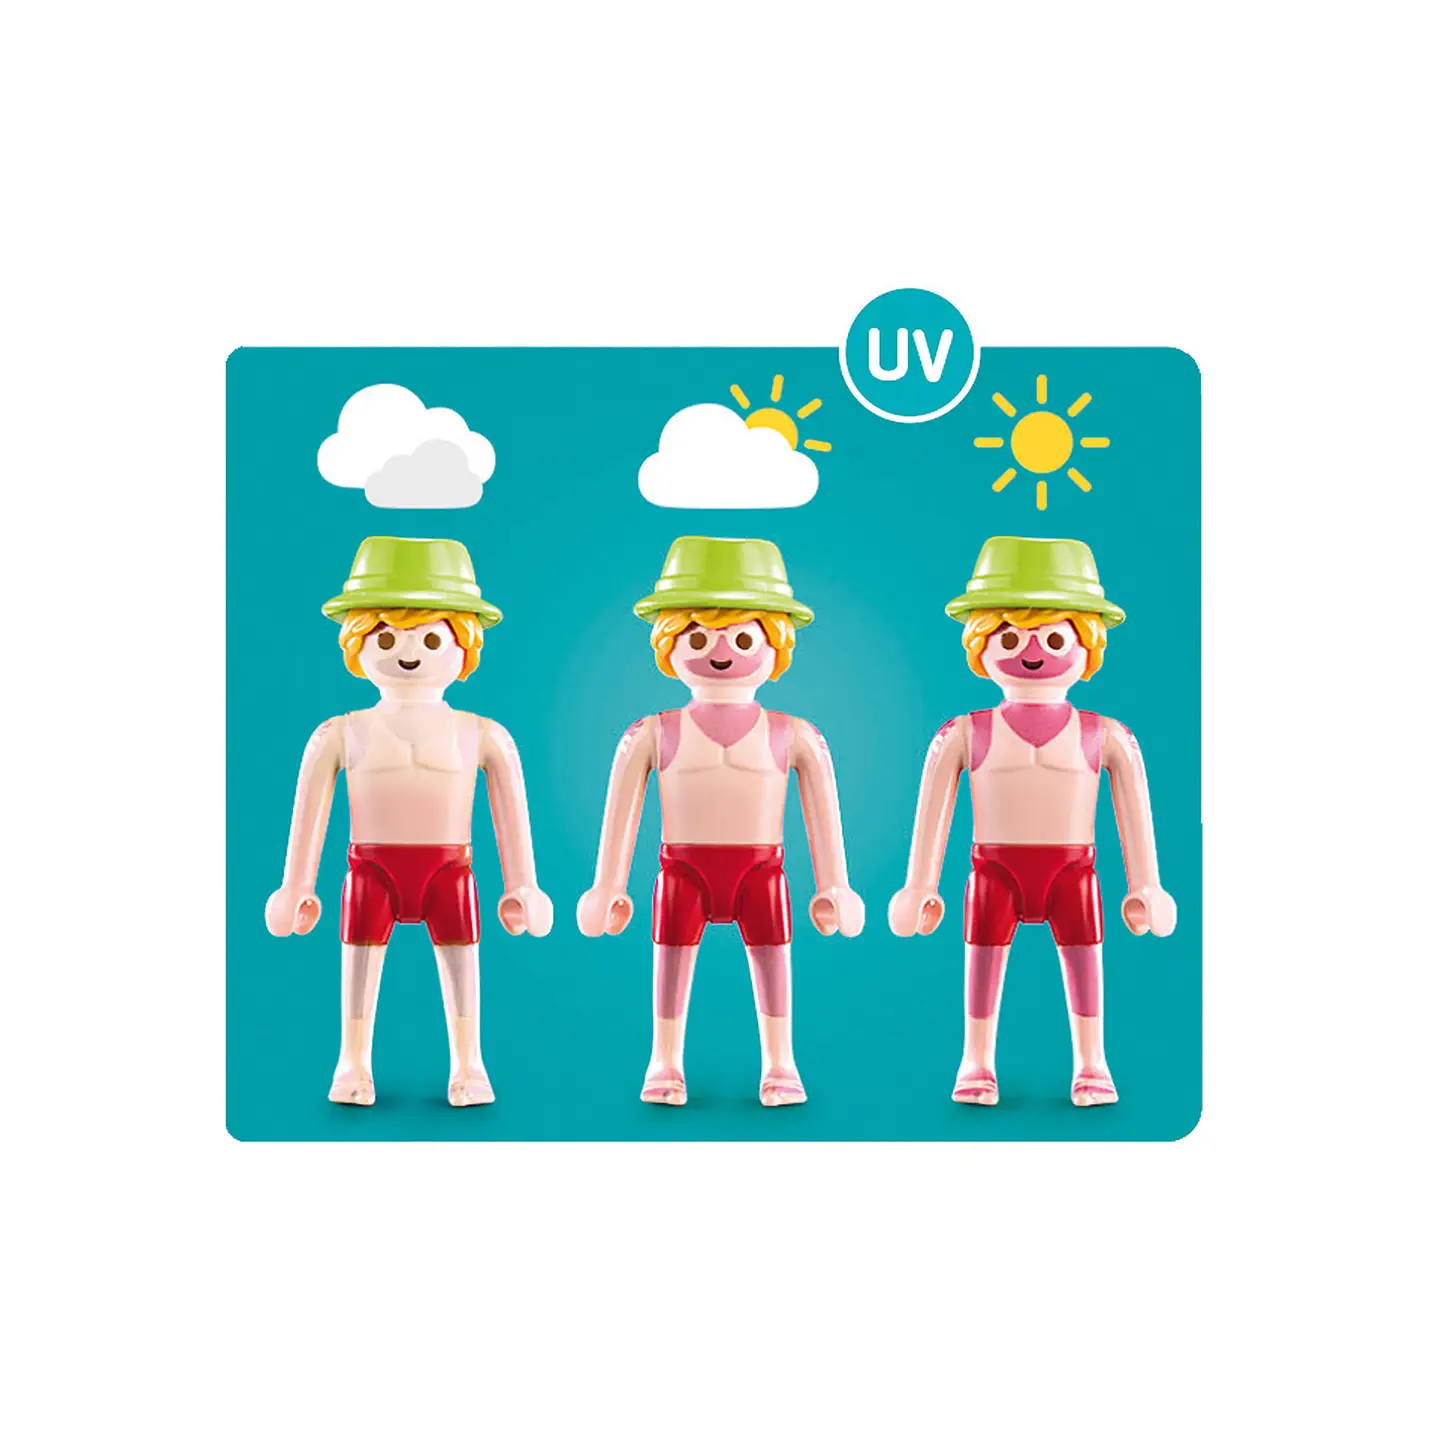 Playmobil Family Fun - Sunburnt Swimmer 70112 (for Kids 4